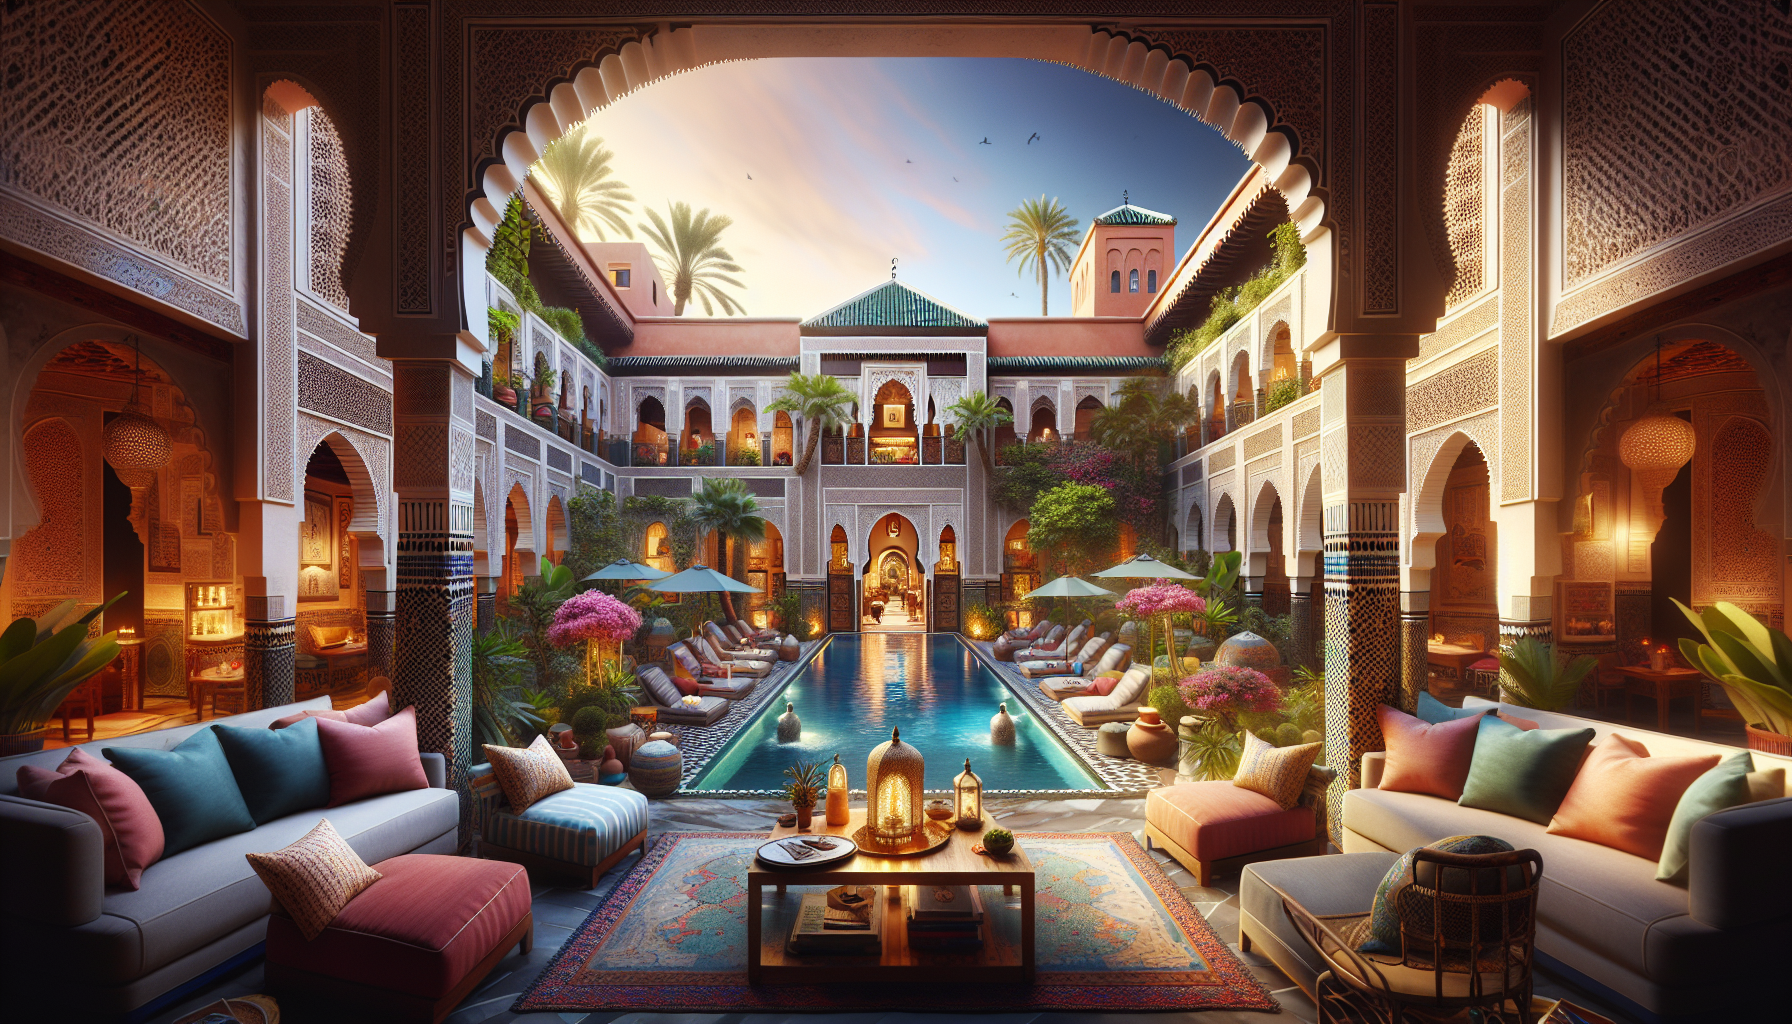 Cover Image for Découvrez les secrets cachés des riads de Marrakech: Charme, luxe et traditions authentiques?